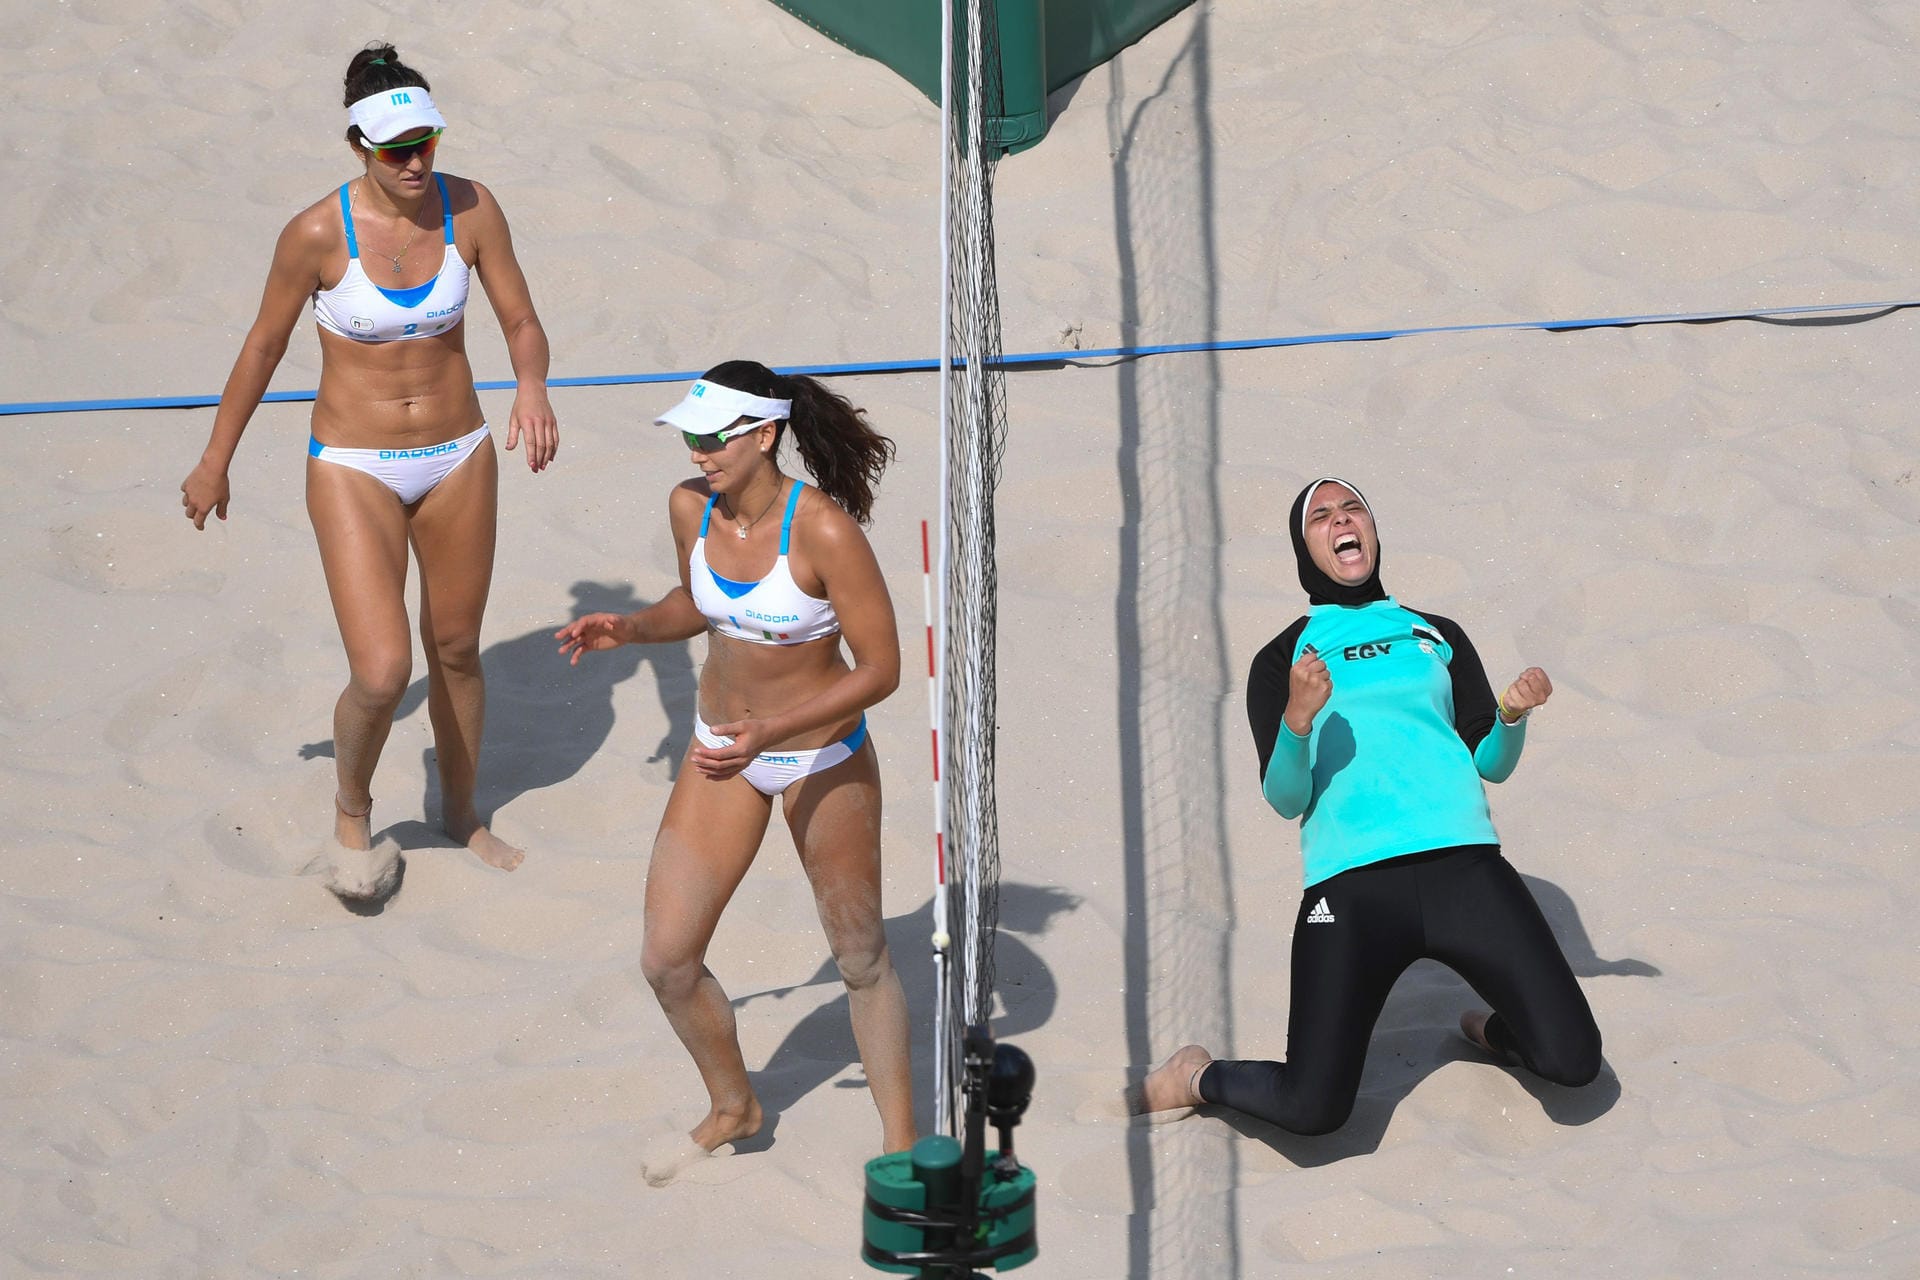 Beim Beachvolleyball jubelt die Ägypterin Doaa El Ghobashy (re.) ihre Freude heraus. Die Italienerinnen Marta Menegatti und Laura Giombini drehen enttäuscht ab.